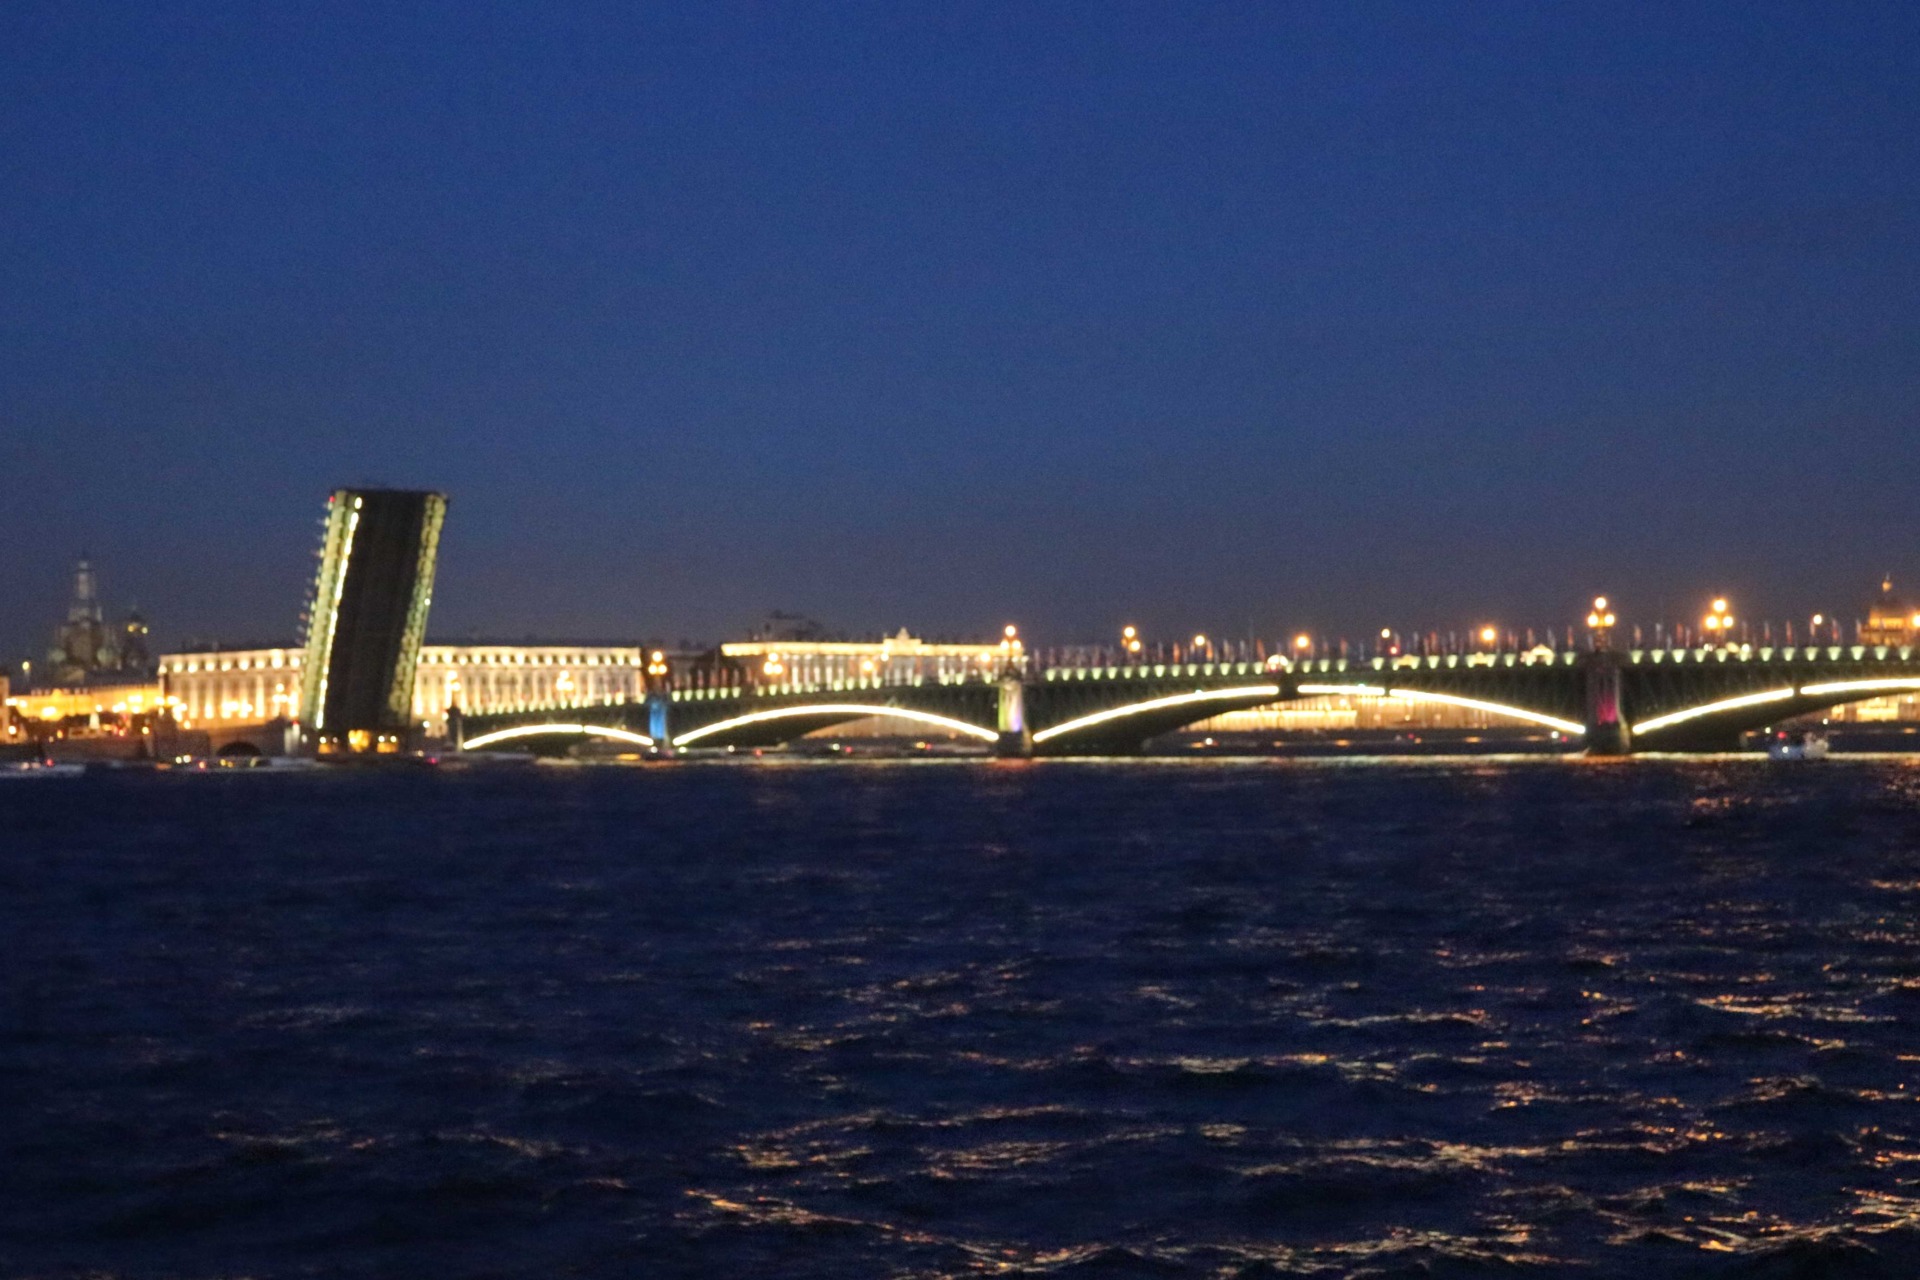 дискотека на теплоходе под разводными мостами Петербурга